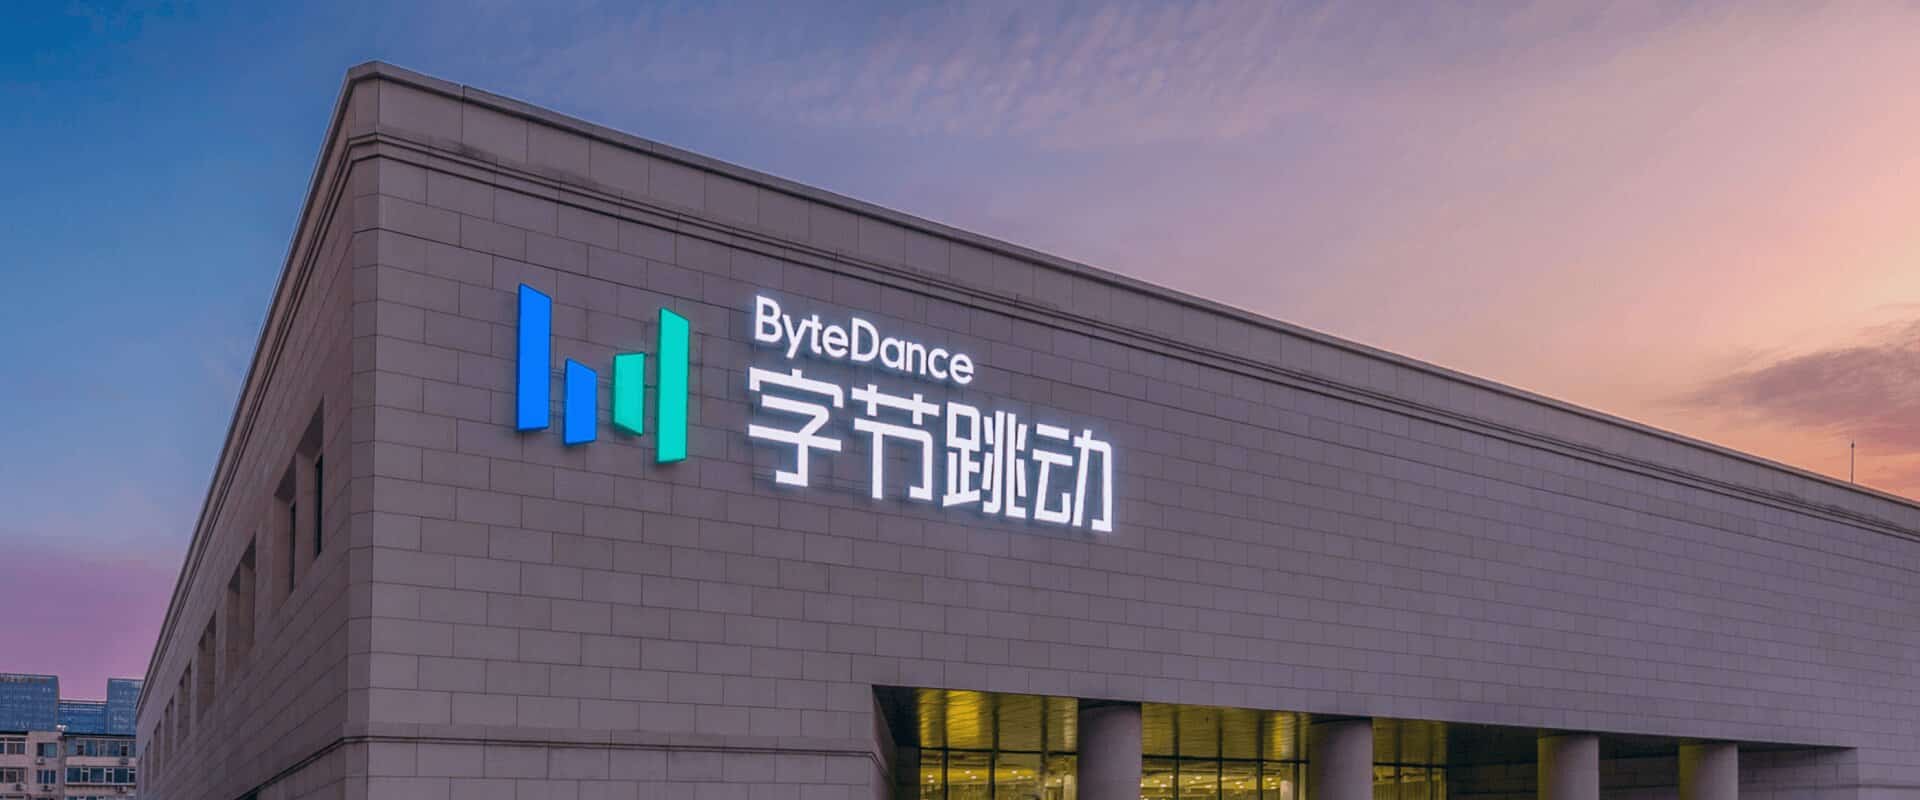 Une enseigne lumineuse avec le logo de ByteDance dessus